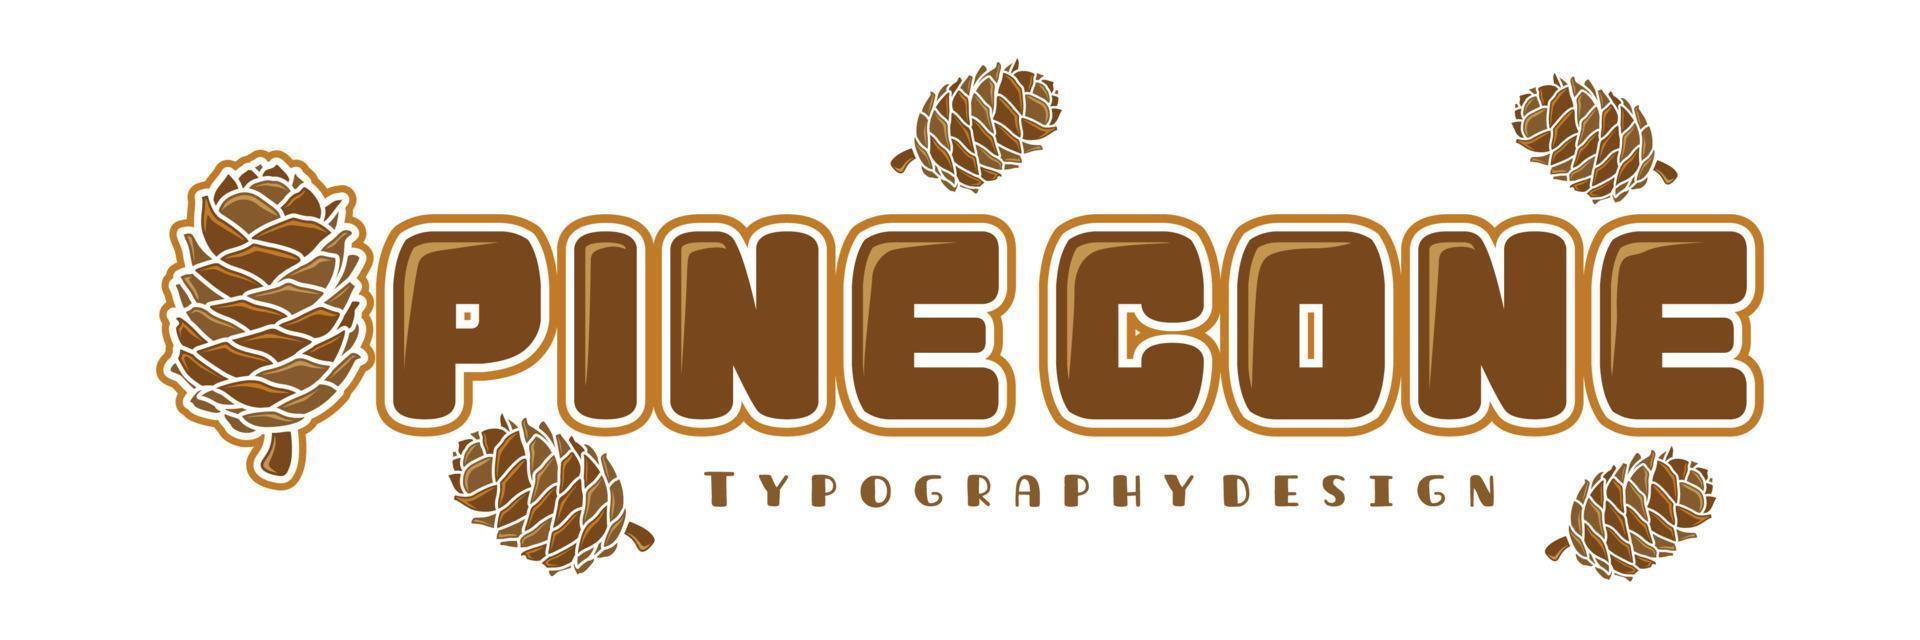 tipografía de piña con icono de piña para logotipo natural o exterior vector